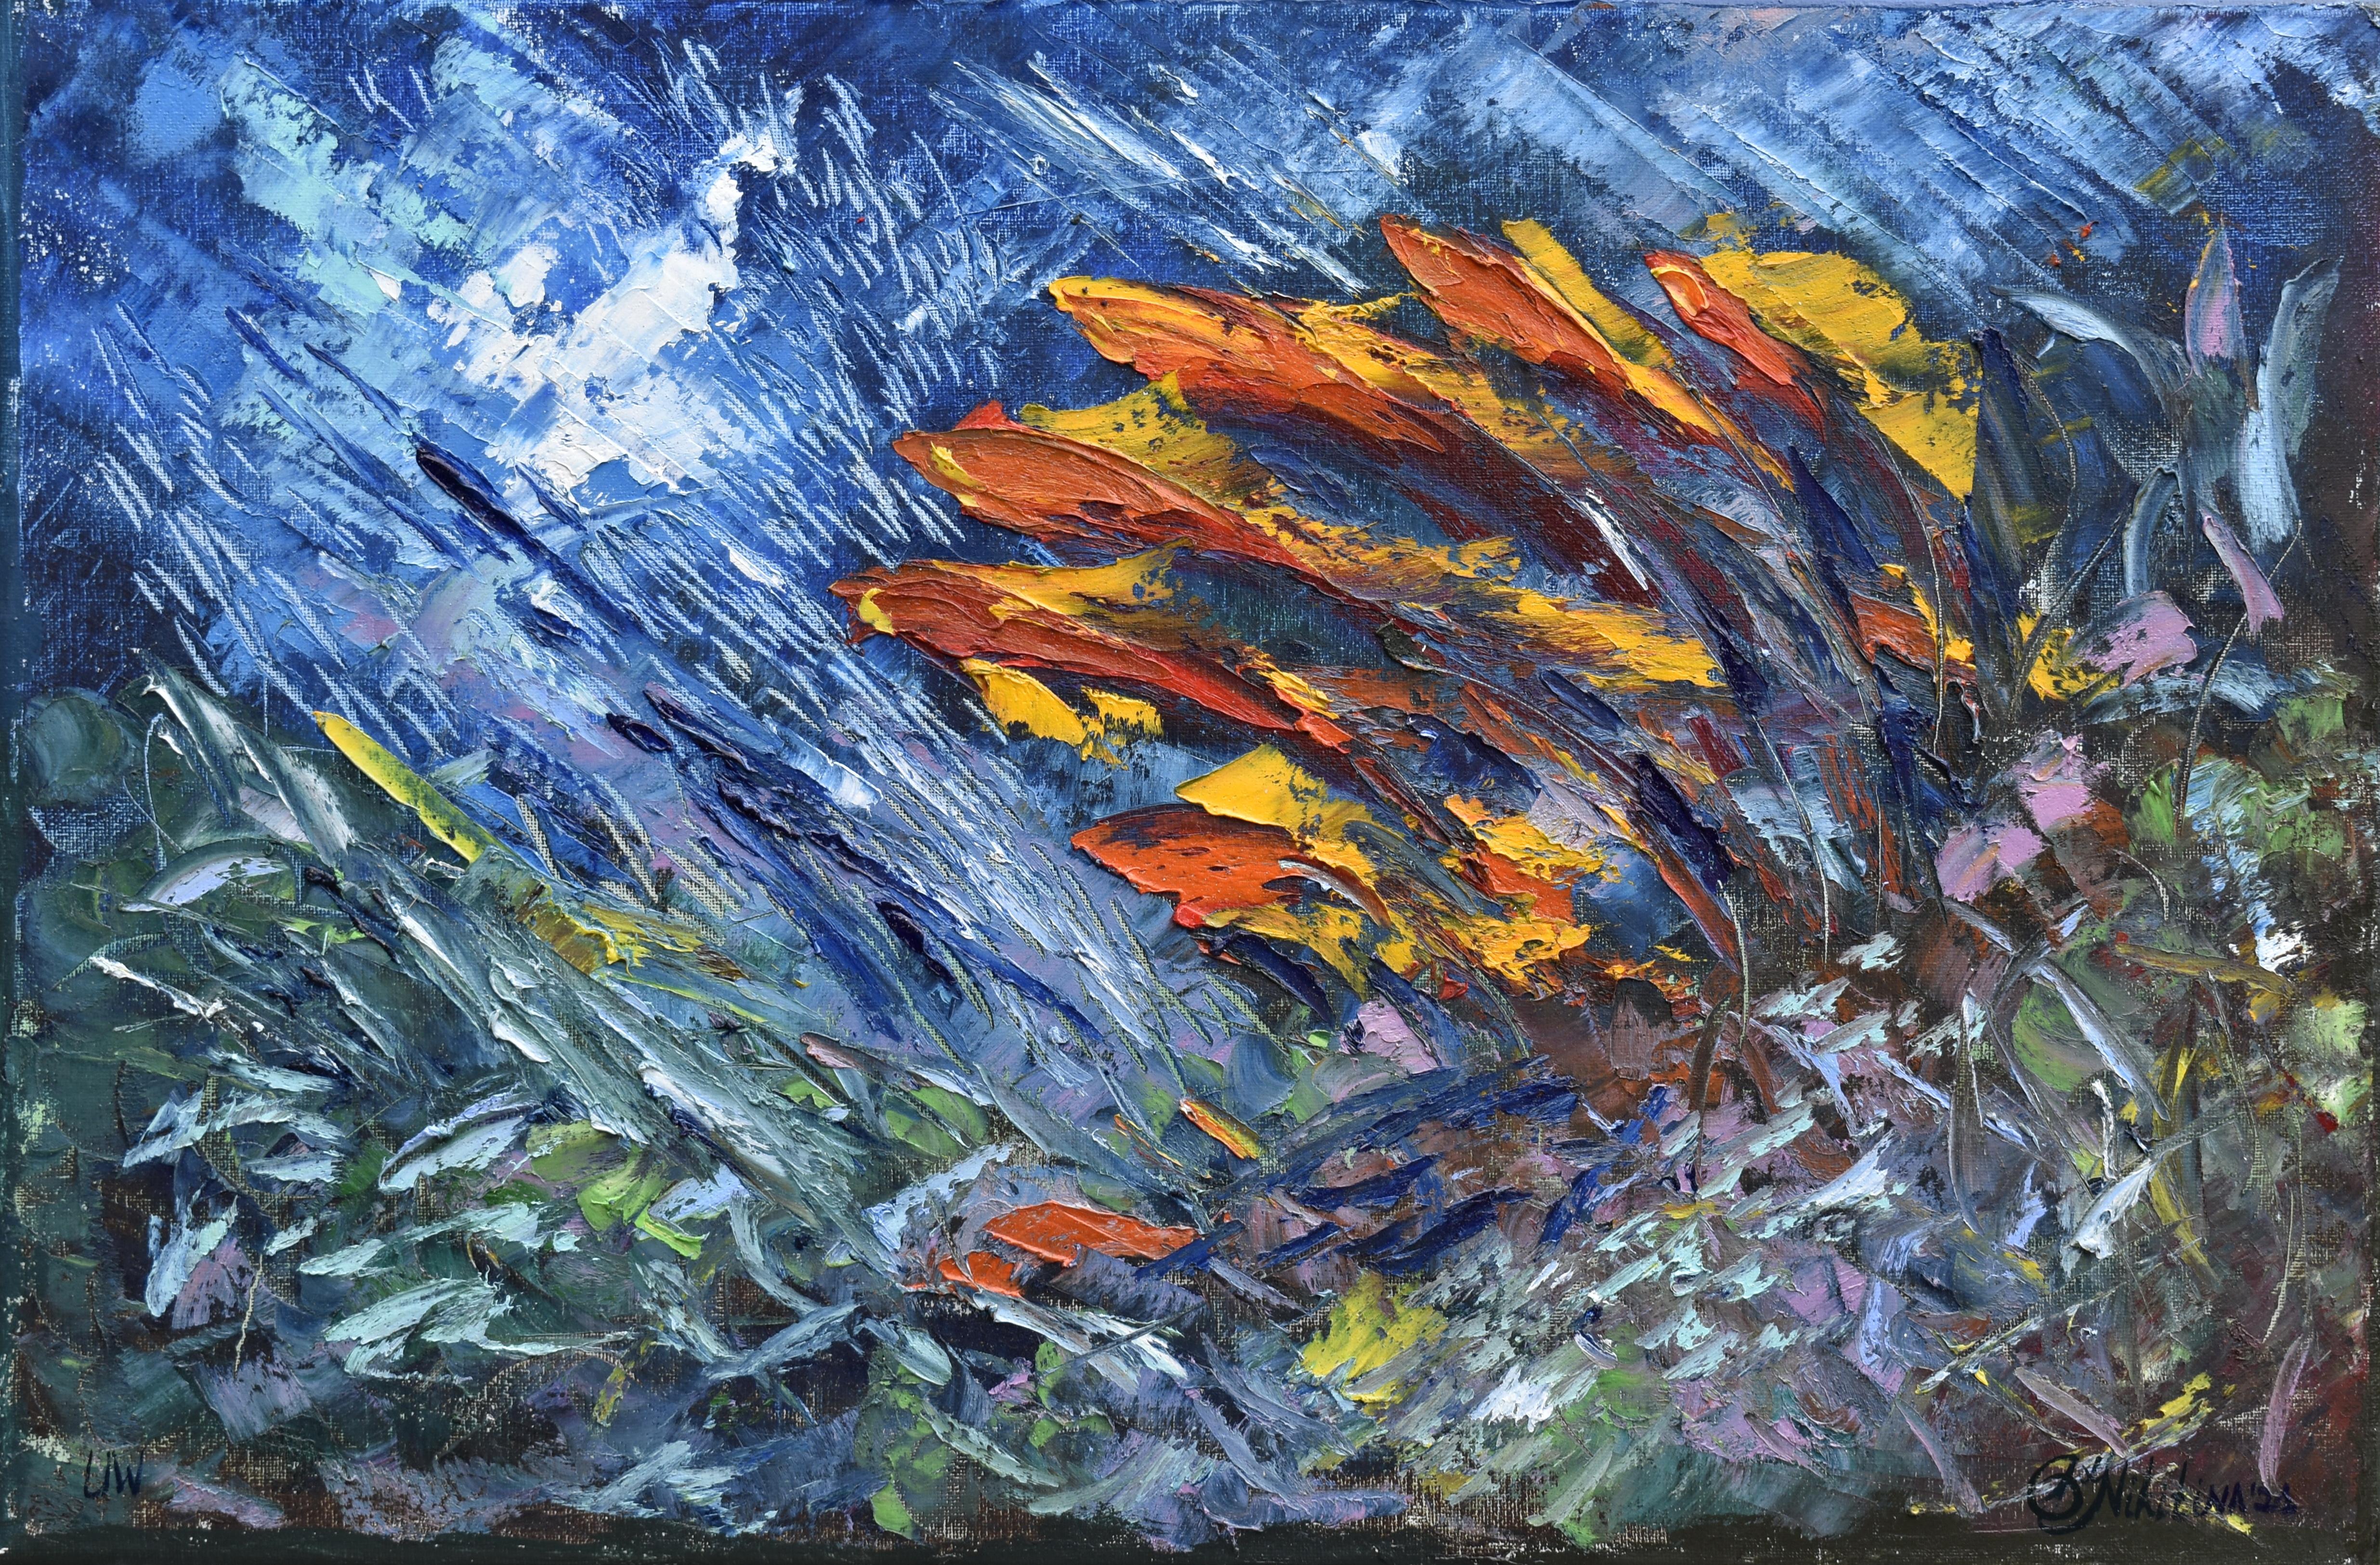 Abstract Painting Olga Nikitina - L'expression rouge « UNDERWATER PAINTING » a été réalisée sous l'eau